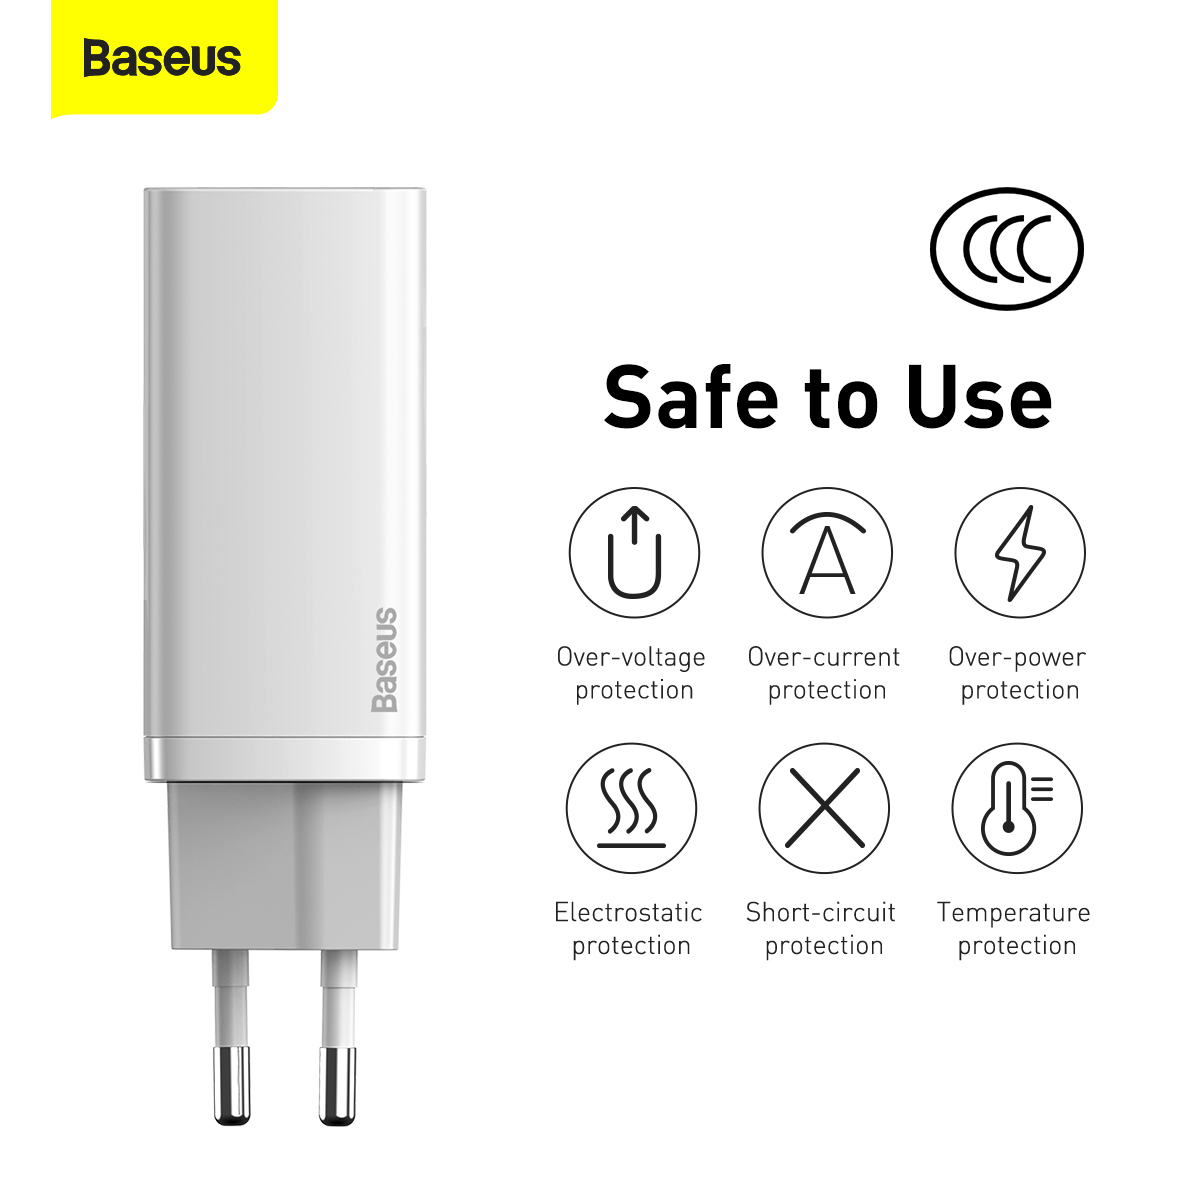 Baseus GaN2 Lite Väggladdare med USB-C+USB, 65W, EU, vit